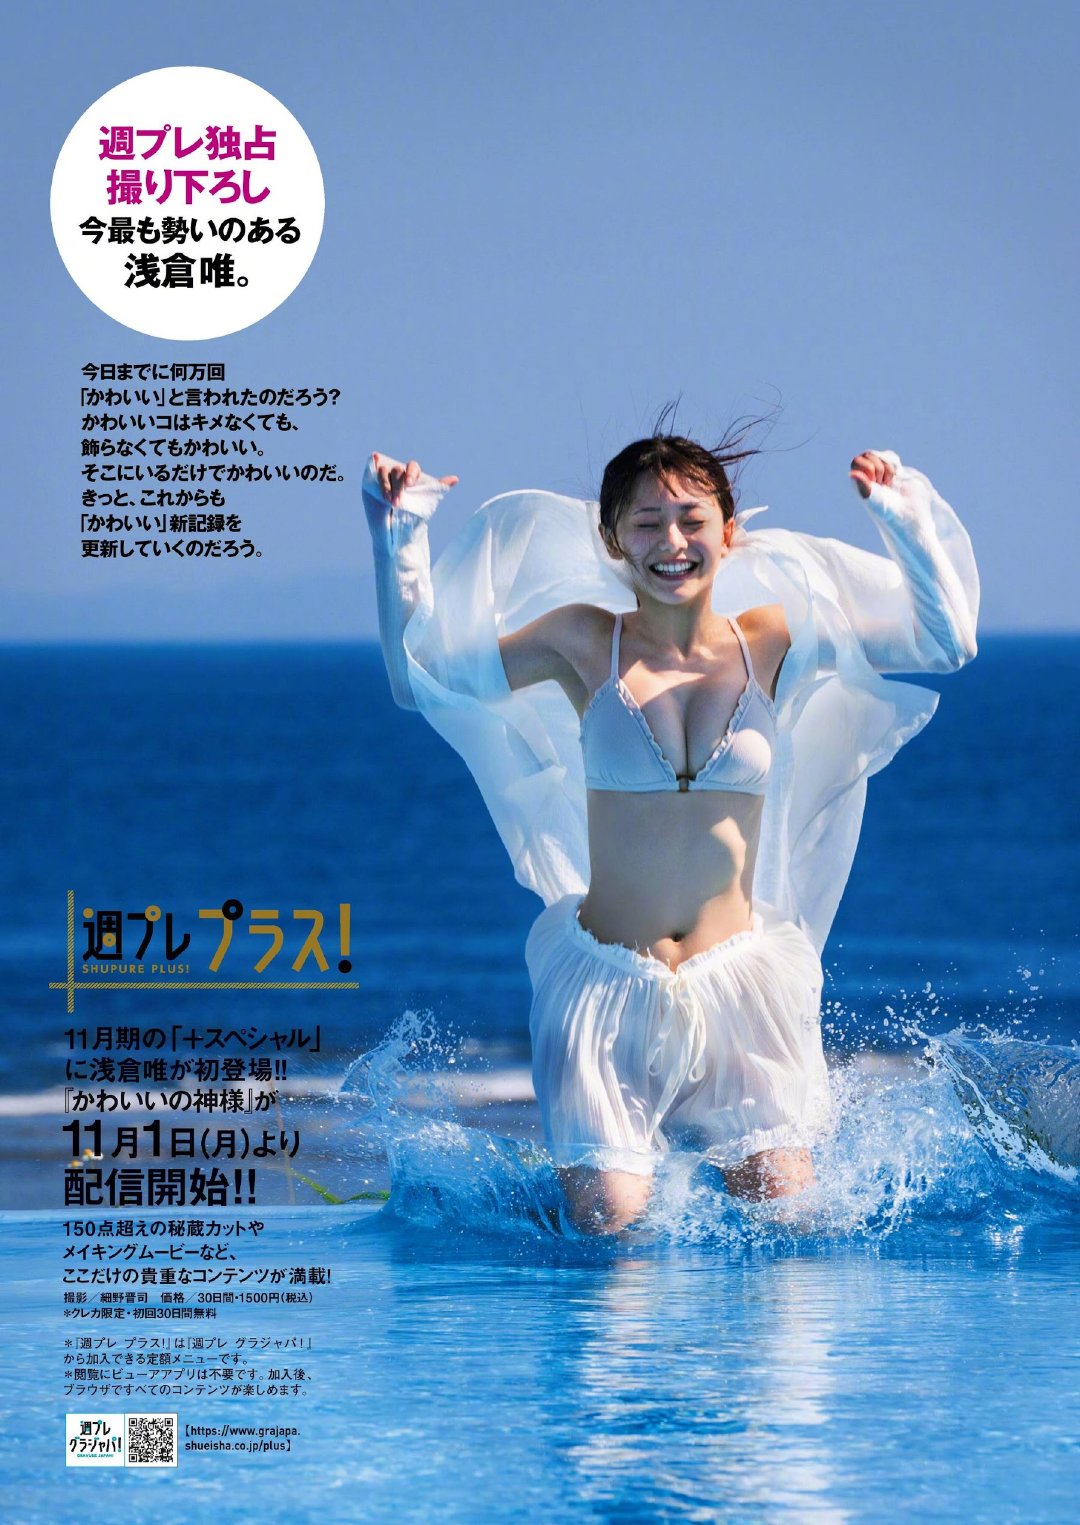 杂志[Weekly Playboy] 浅仓唯 首次登上封面插图10